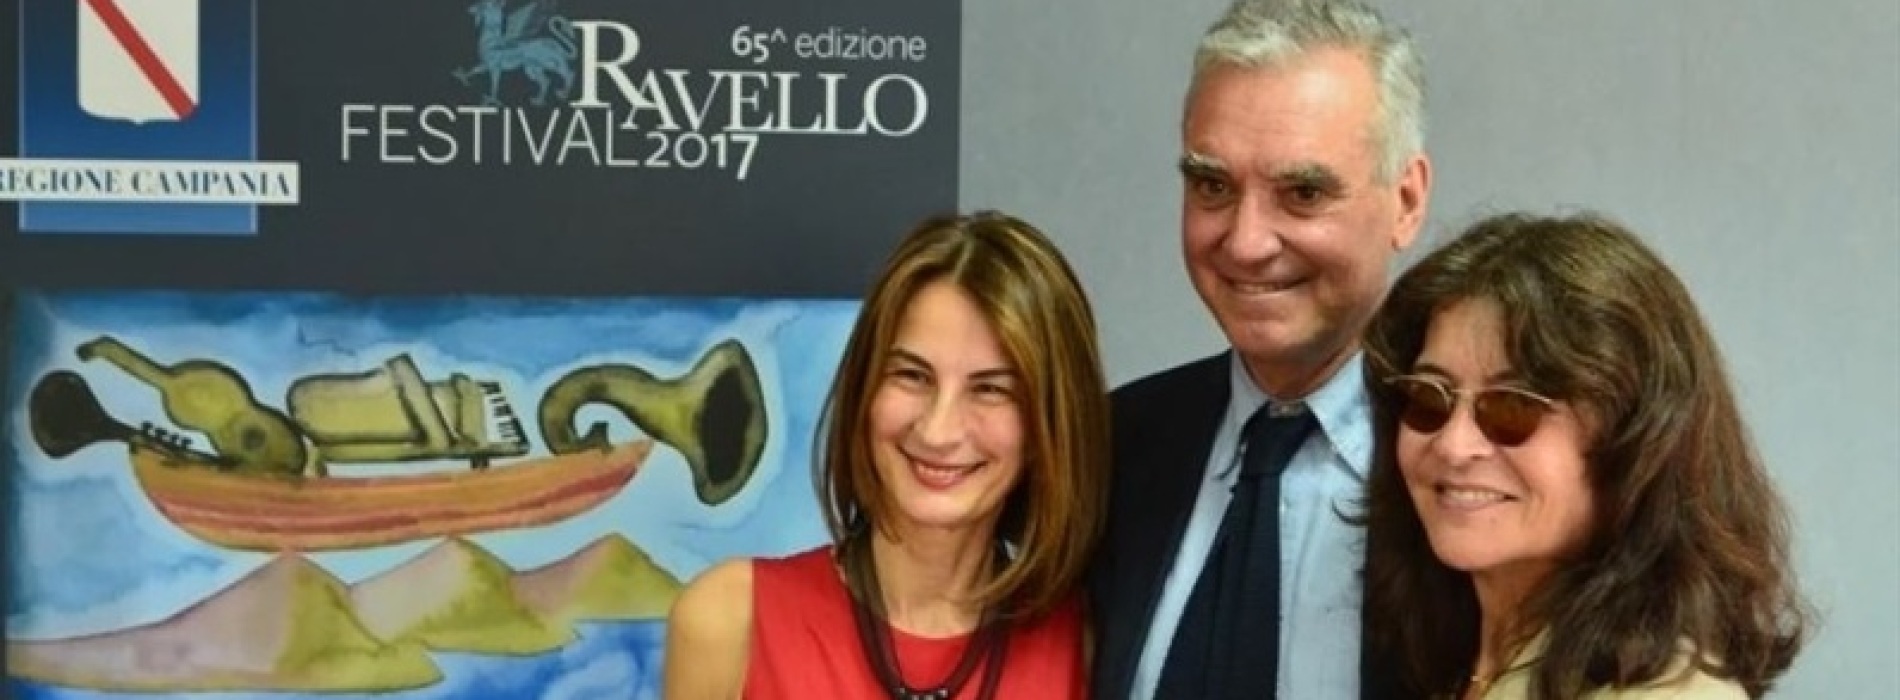 Tempo di festival a Ravello, presentata la 65esima edizione